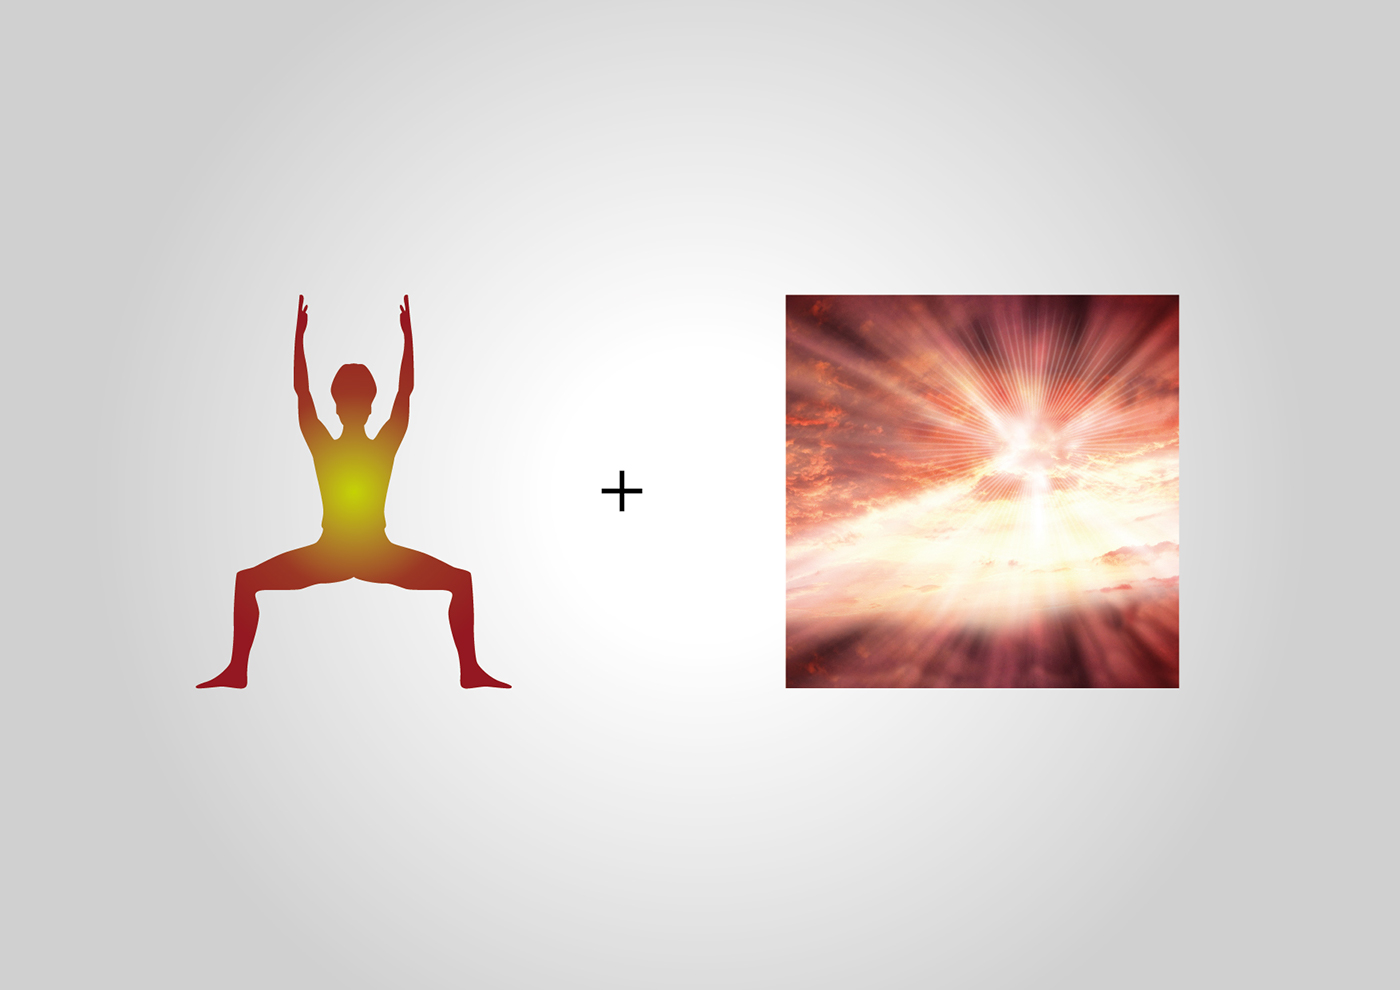 India Wellness elixir resort Welixir nirvana peace Health life Yoga